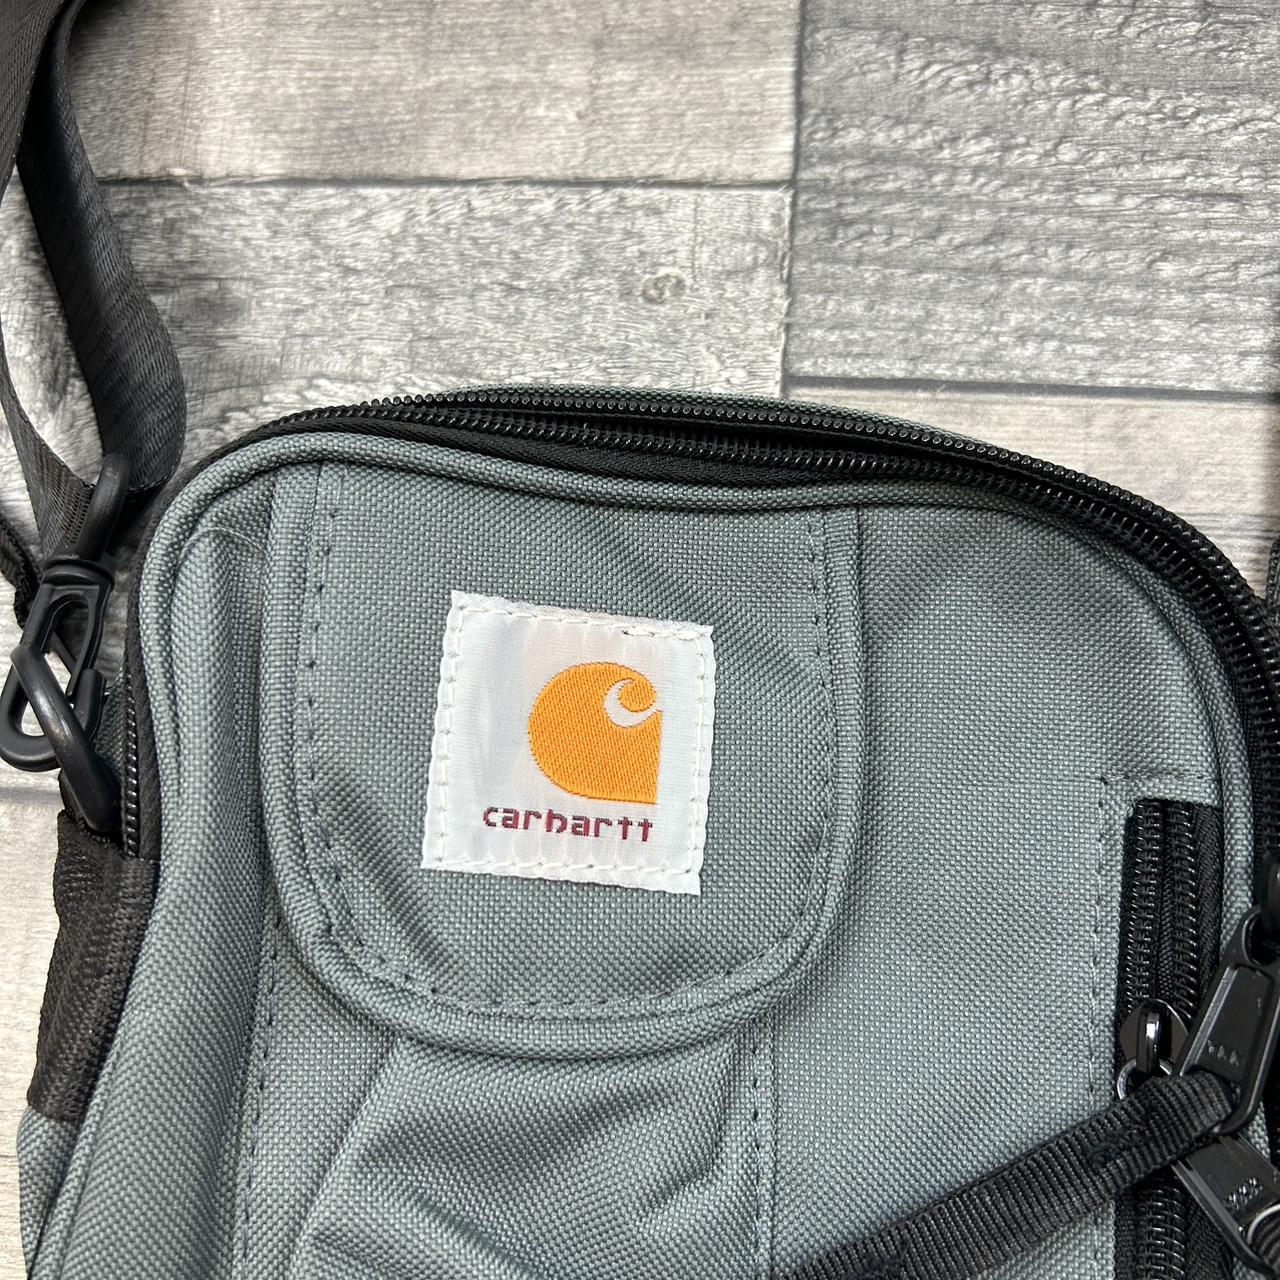 🍐 Carhartt REWORK WIP Grey messenger bag Brand new... - Depop